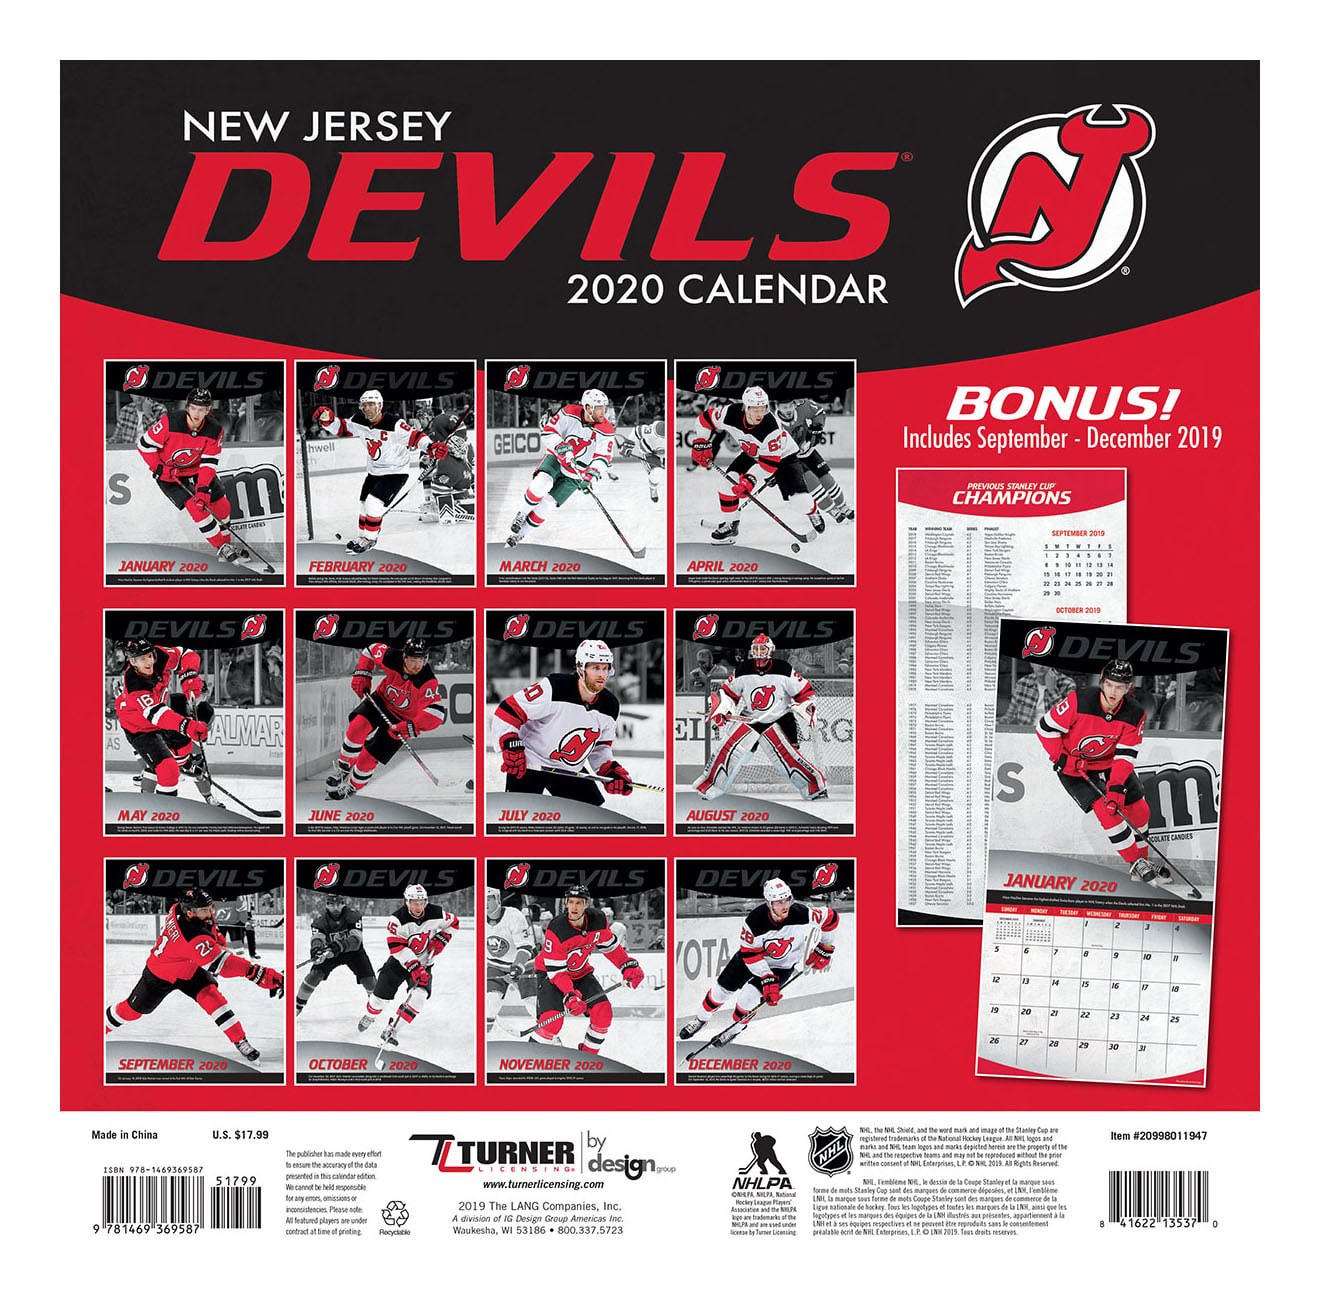 new jersey devils season schedule